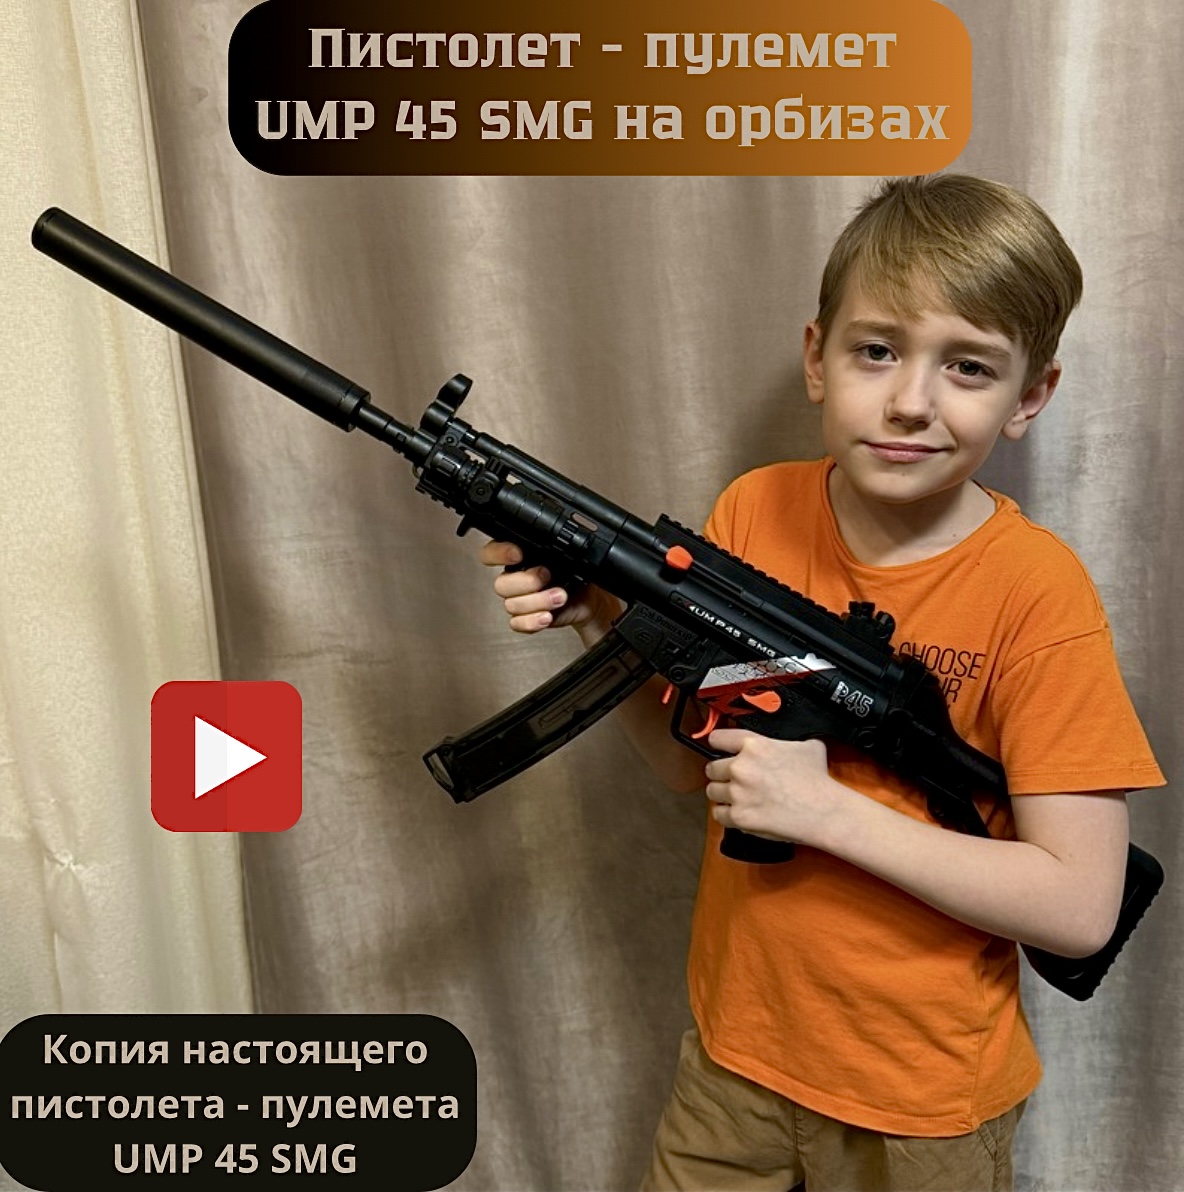 Пистолет-пулемет детский игровой RanCap UMP 45 SMG с орбизами (игрушка) игровой набор rancap арена с волчками